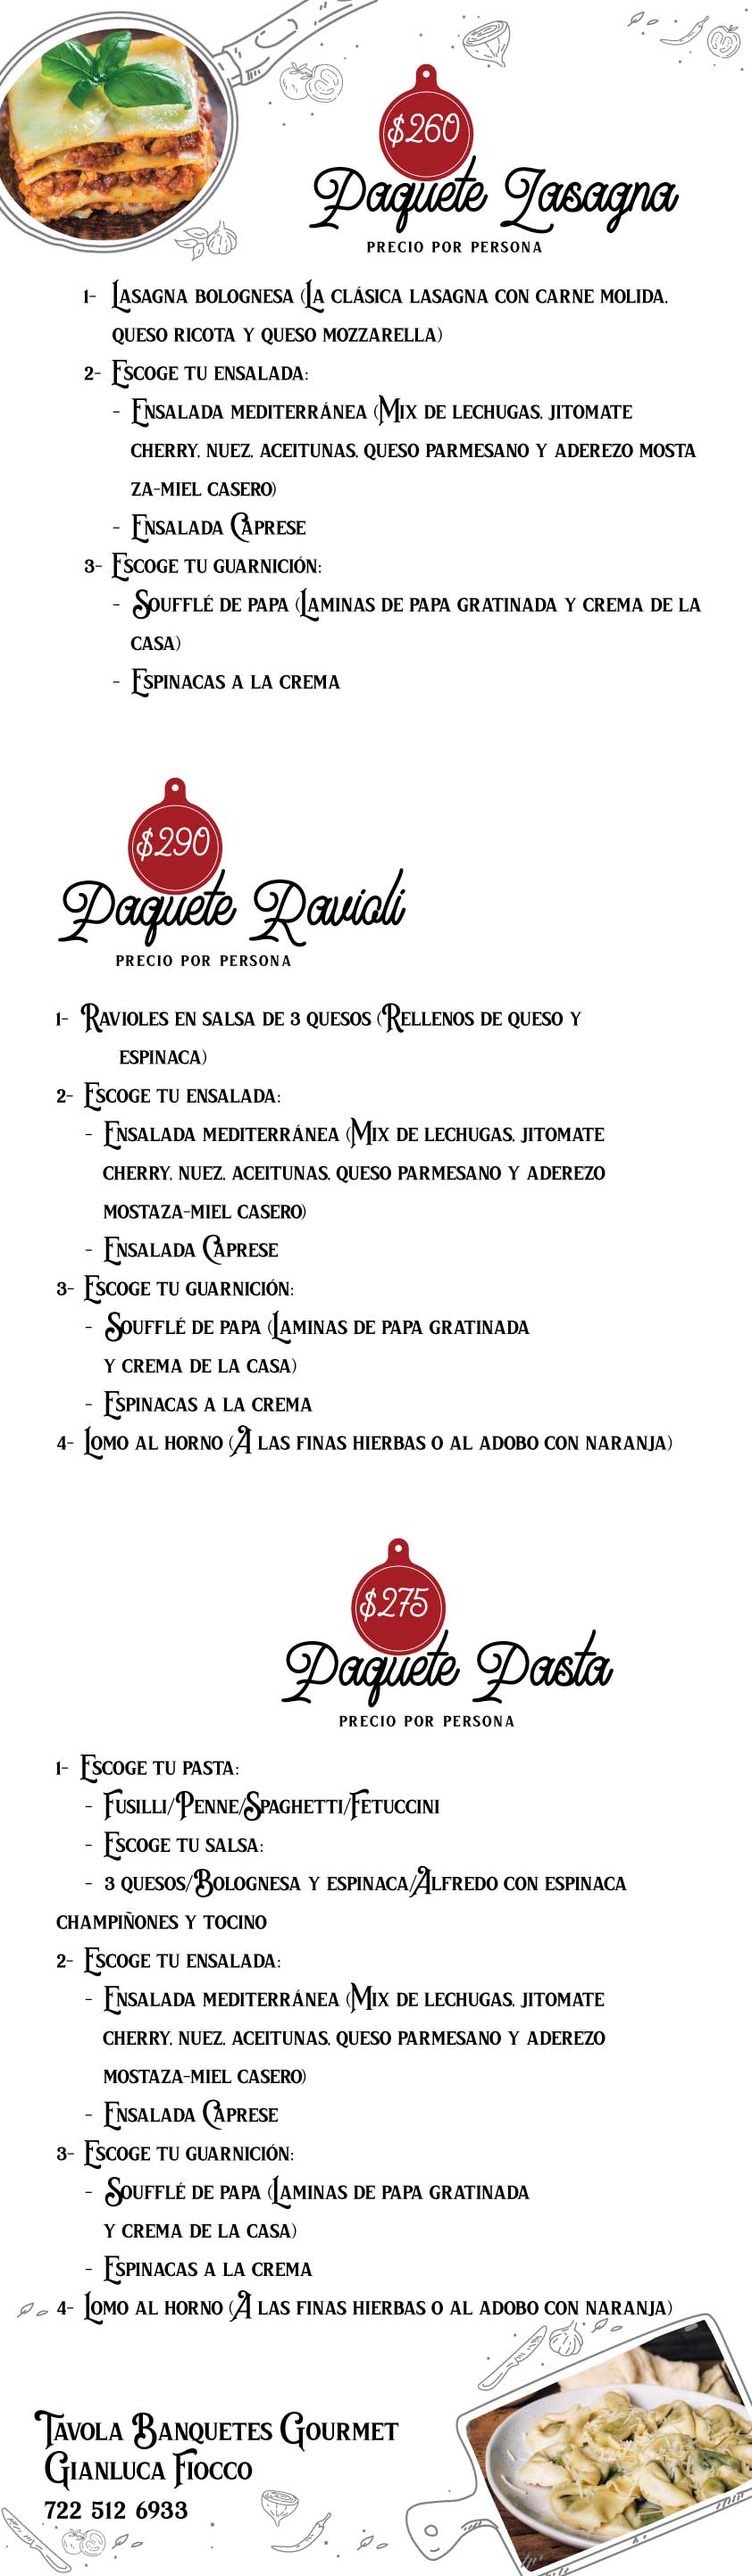 taviola menu